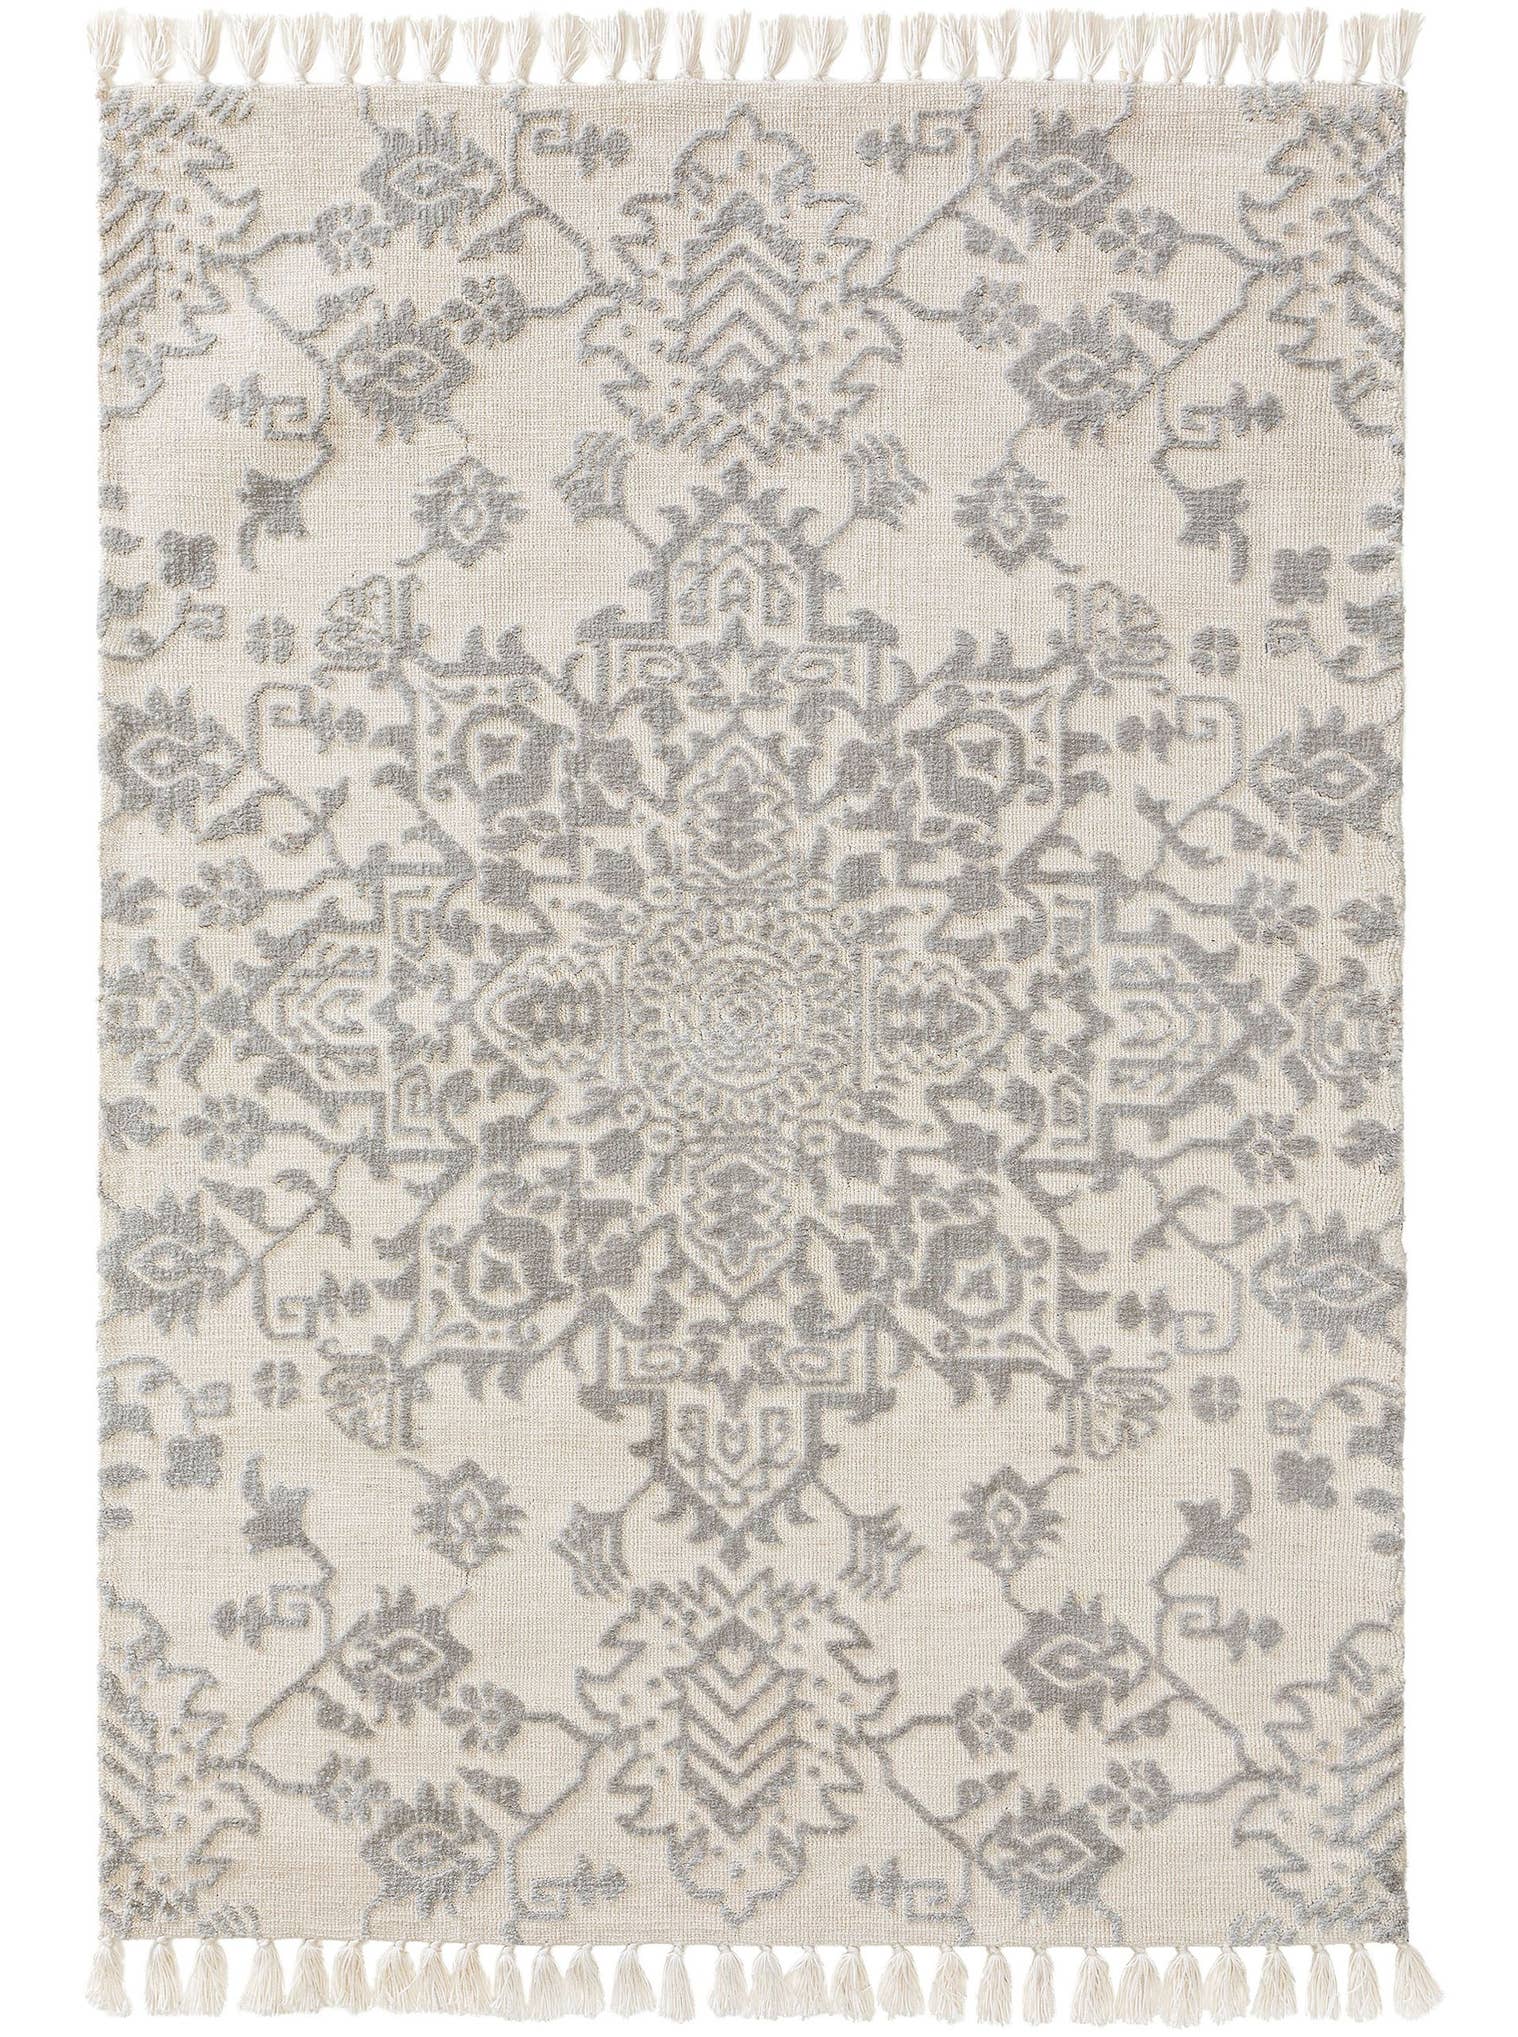 Teppich aus 100% Polyester (Mikrofaser) in Grau mit 6 bis 10 mm hohem Flor von benuta Nest